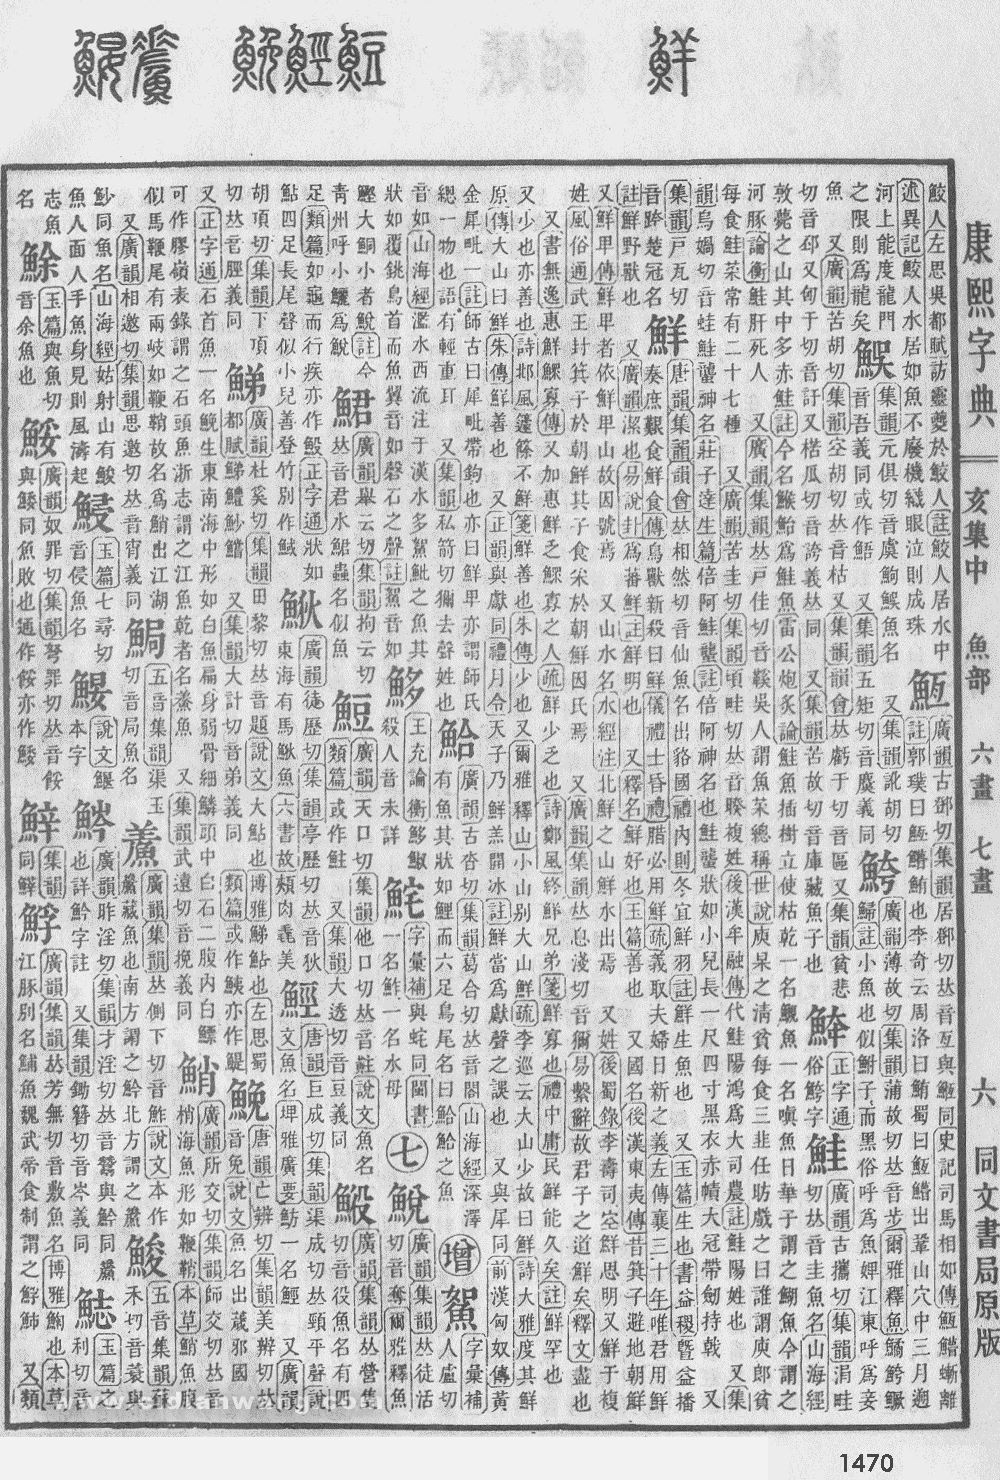 康熙字典掃描版第1470頁